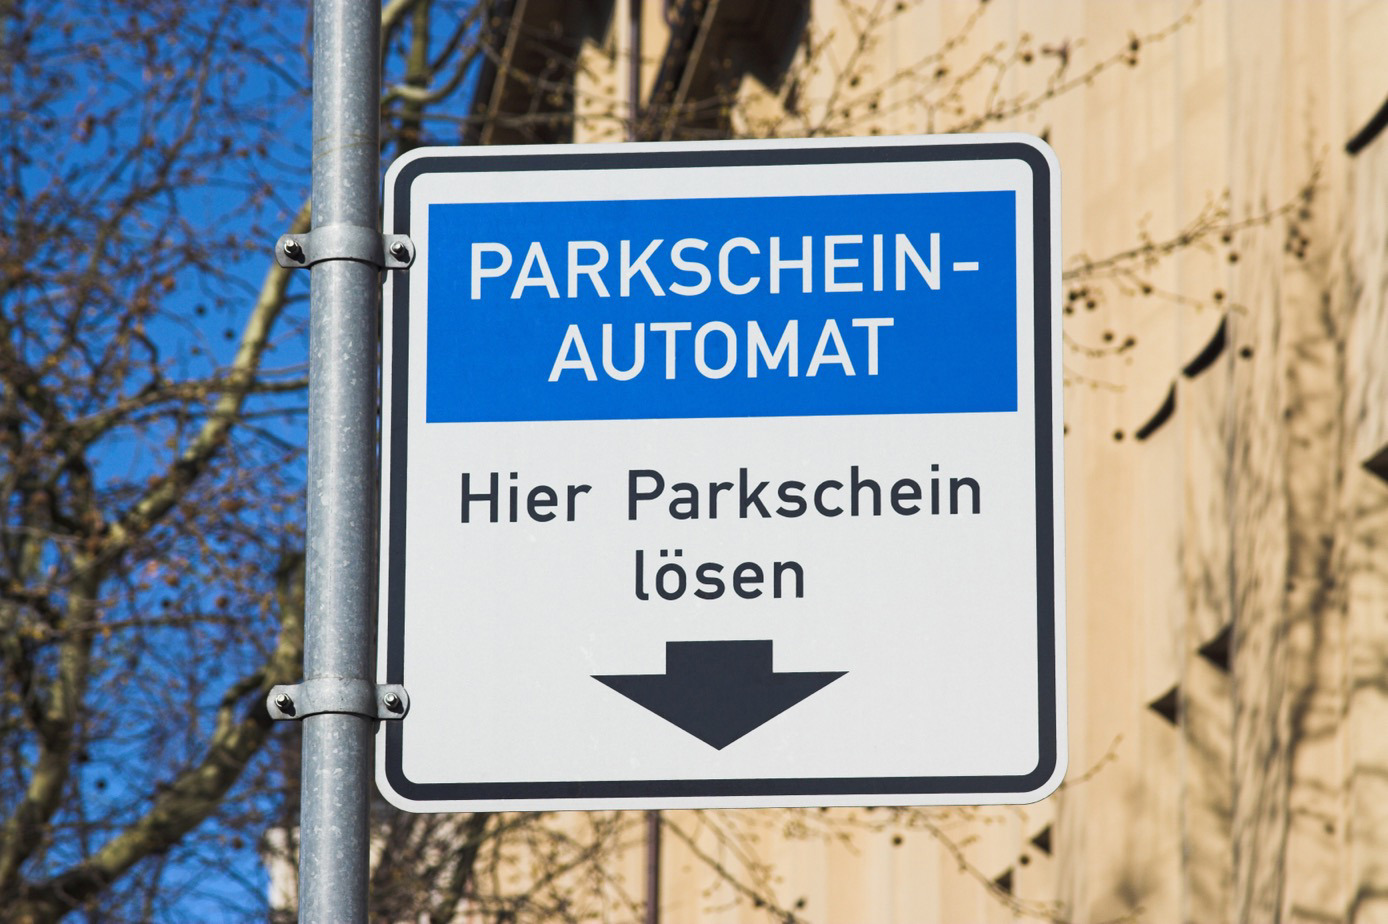 Parklizenz selbst geändert: Anzeige